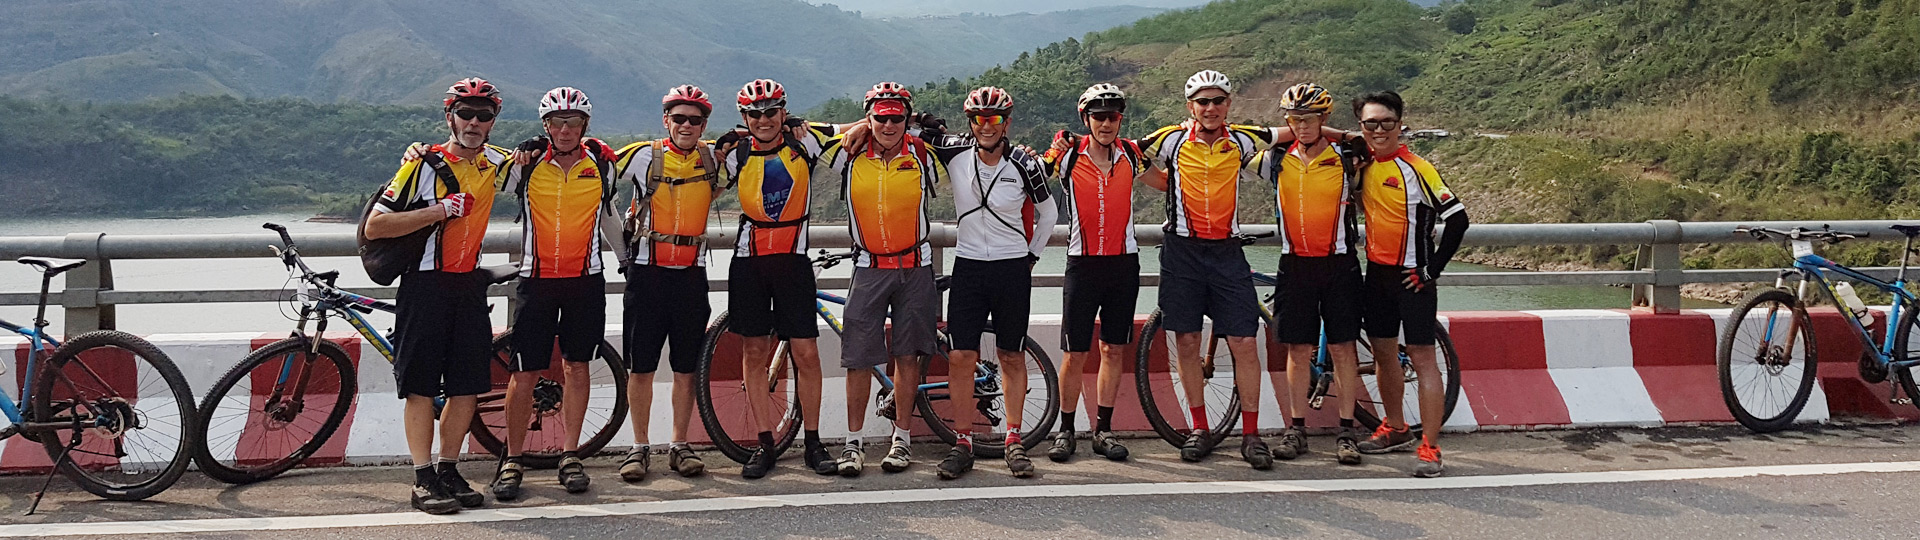 Laos Mountain Biking Tour - 5 Days